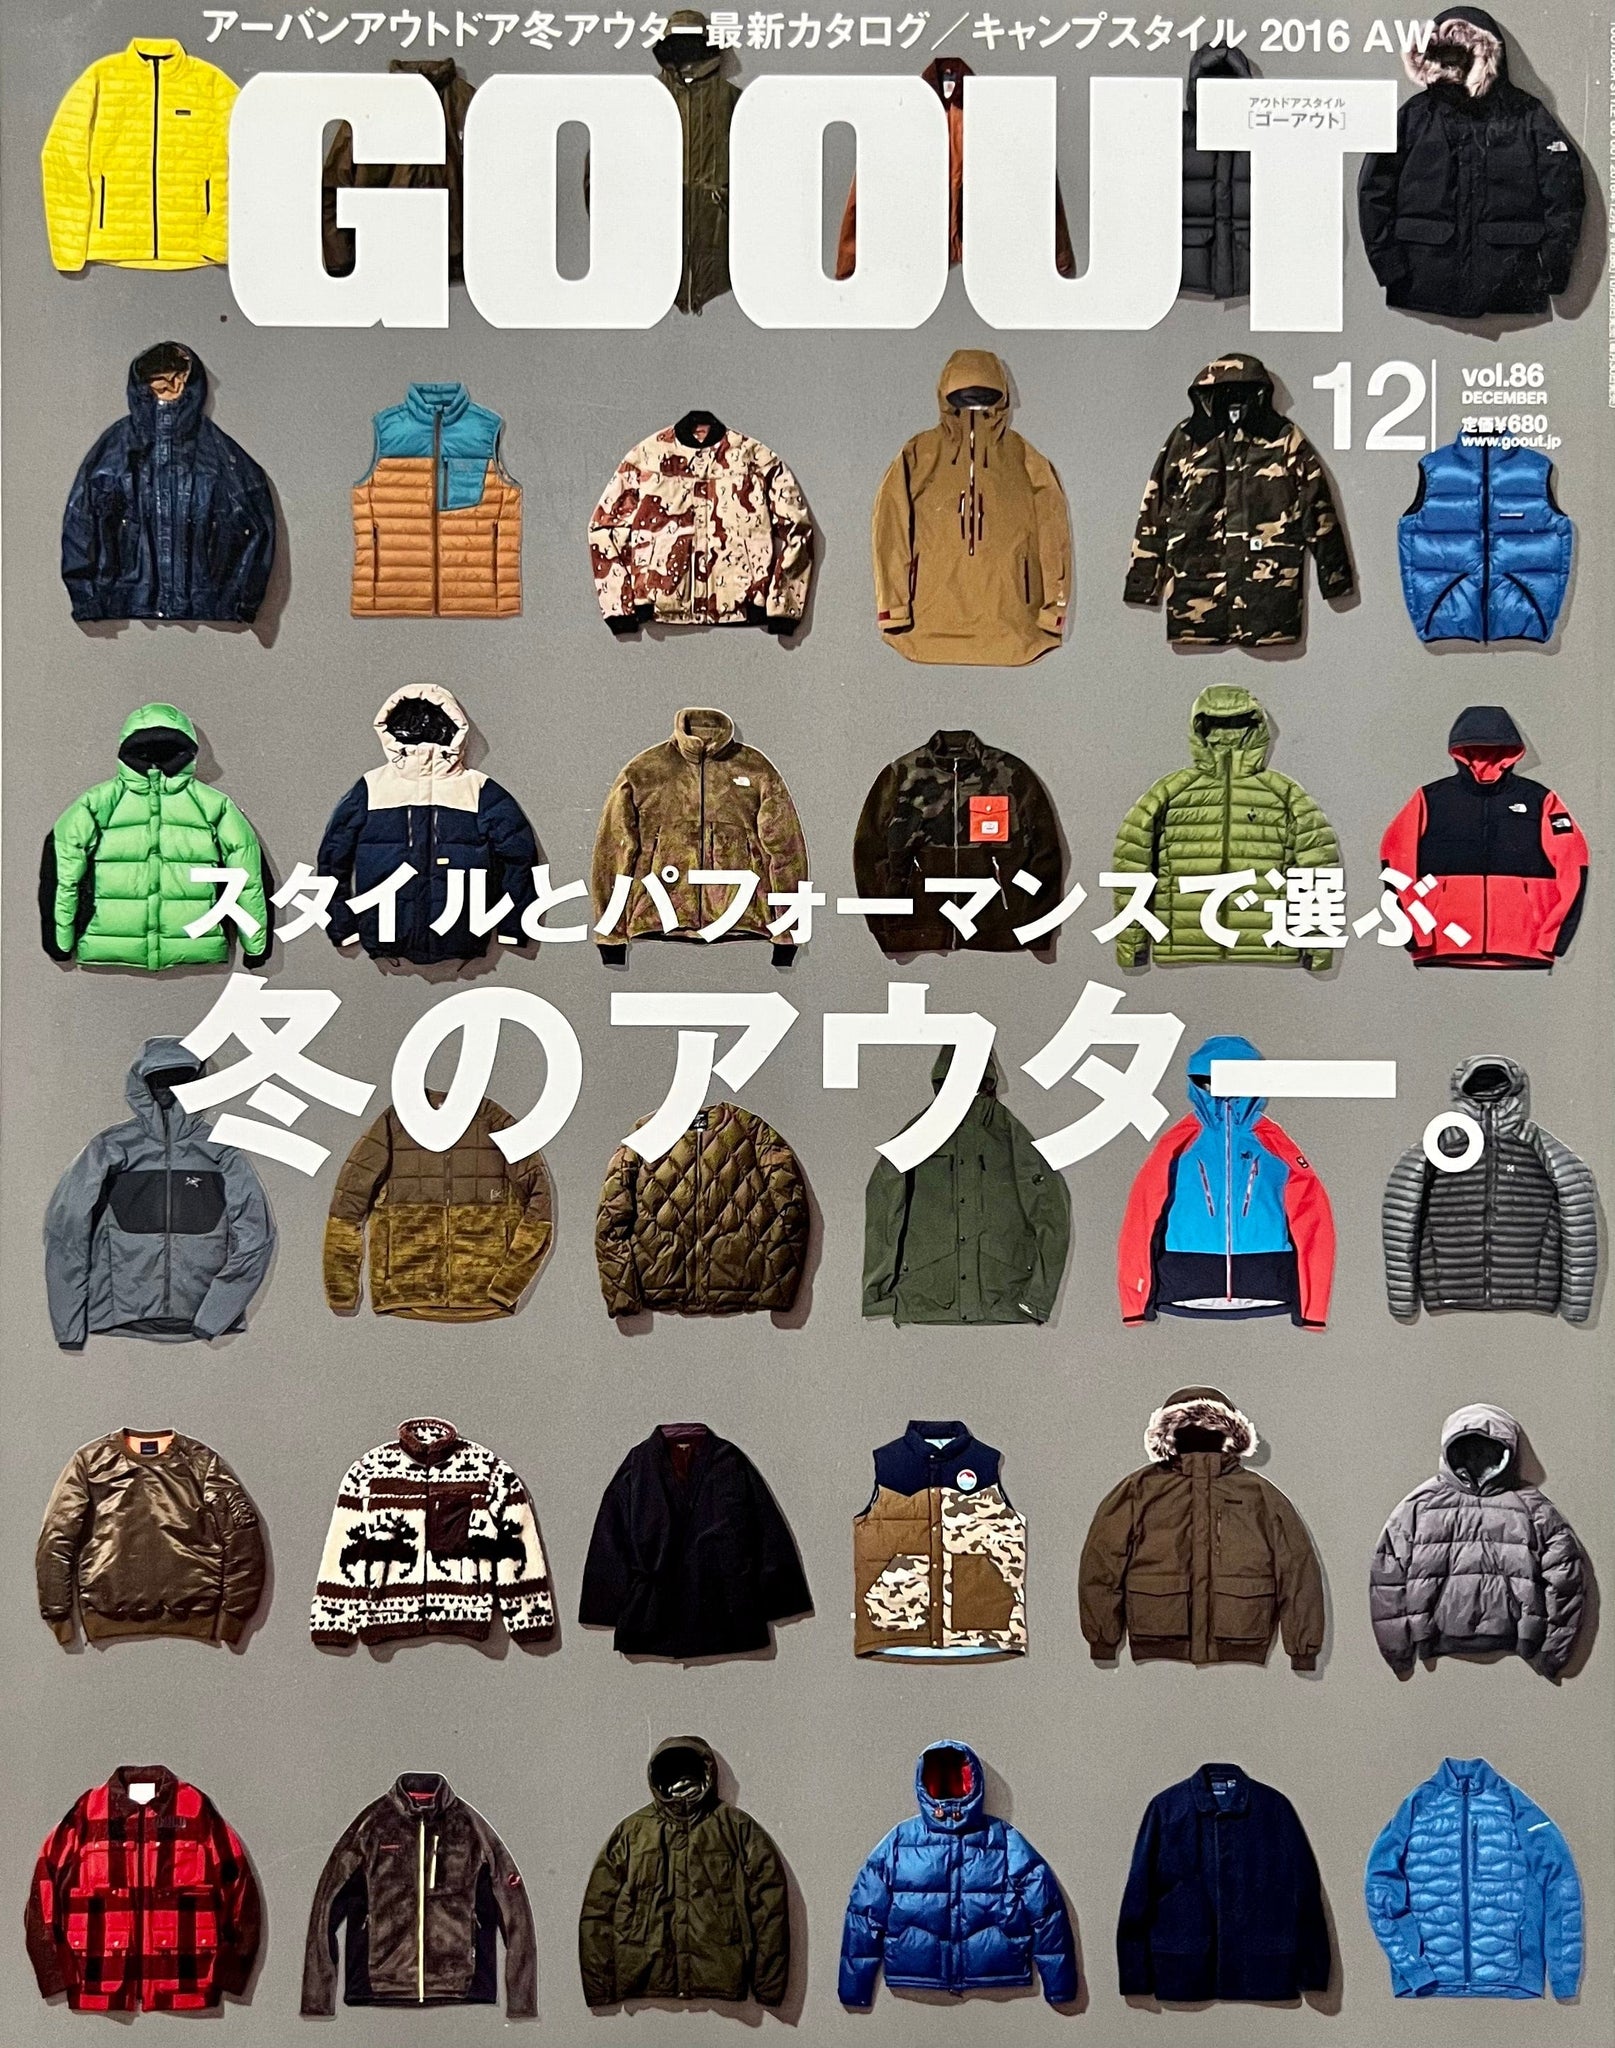 Go Out Magazine - Volume 86 - AW 2016